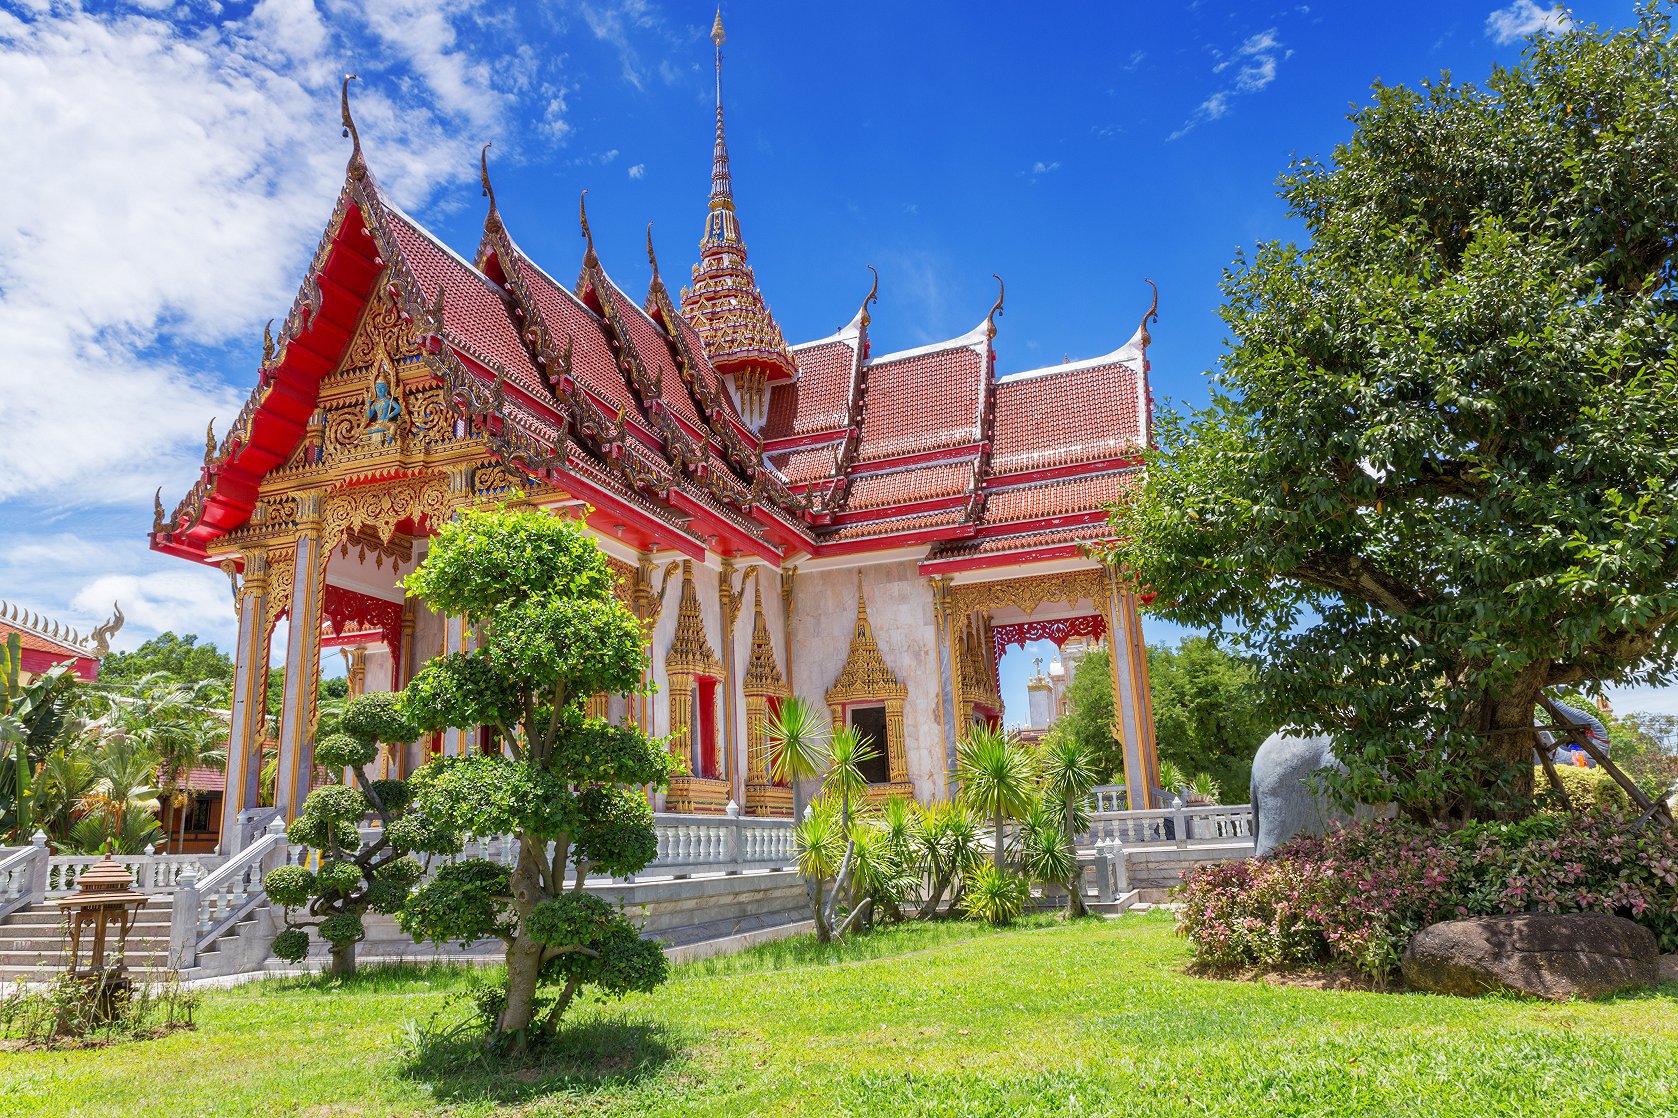 Đánh giá về địa điểm tham quan ở Chaithararam Temple - Wat Chalong - Vé Chaithararam Temple - Wat Chalong - Giảm giá ở Chaithararam Temple - Wat Chalong - giao thông